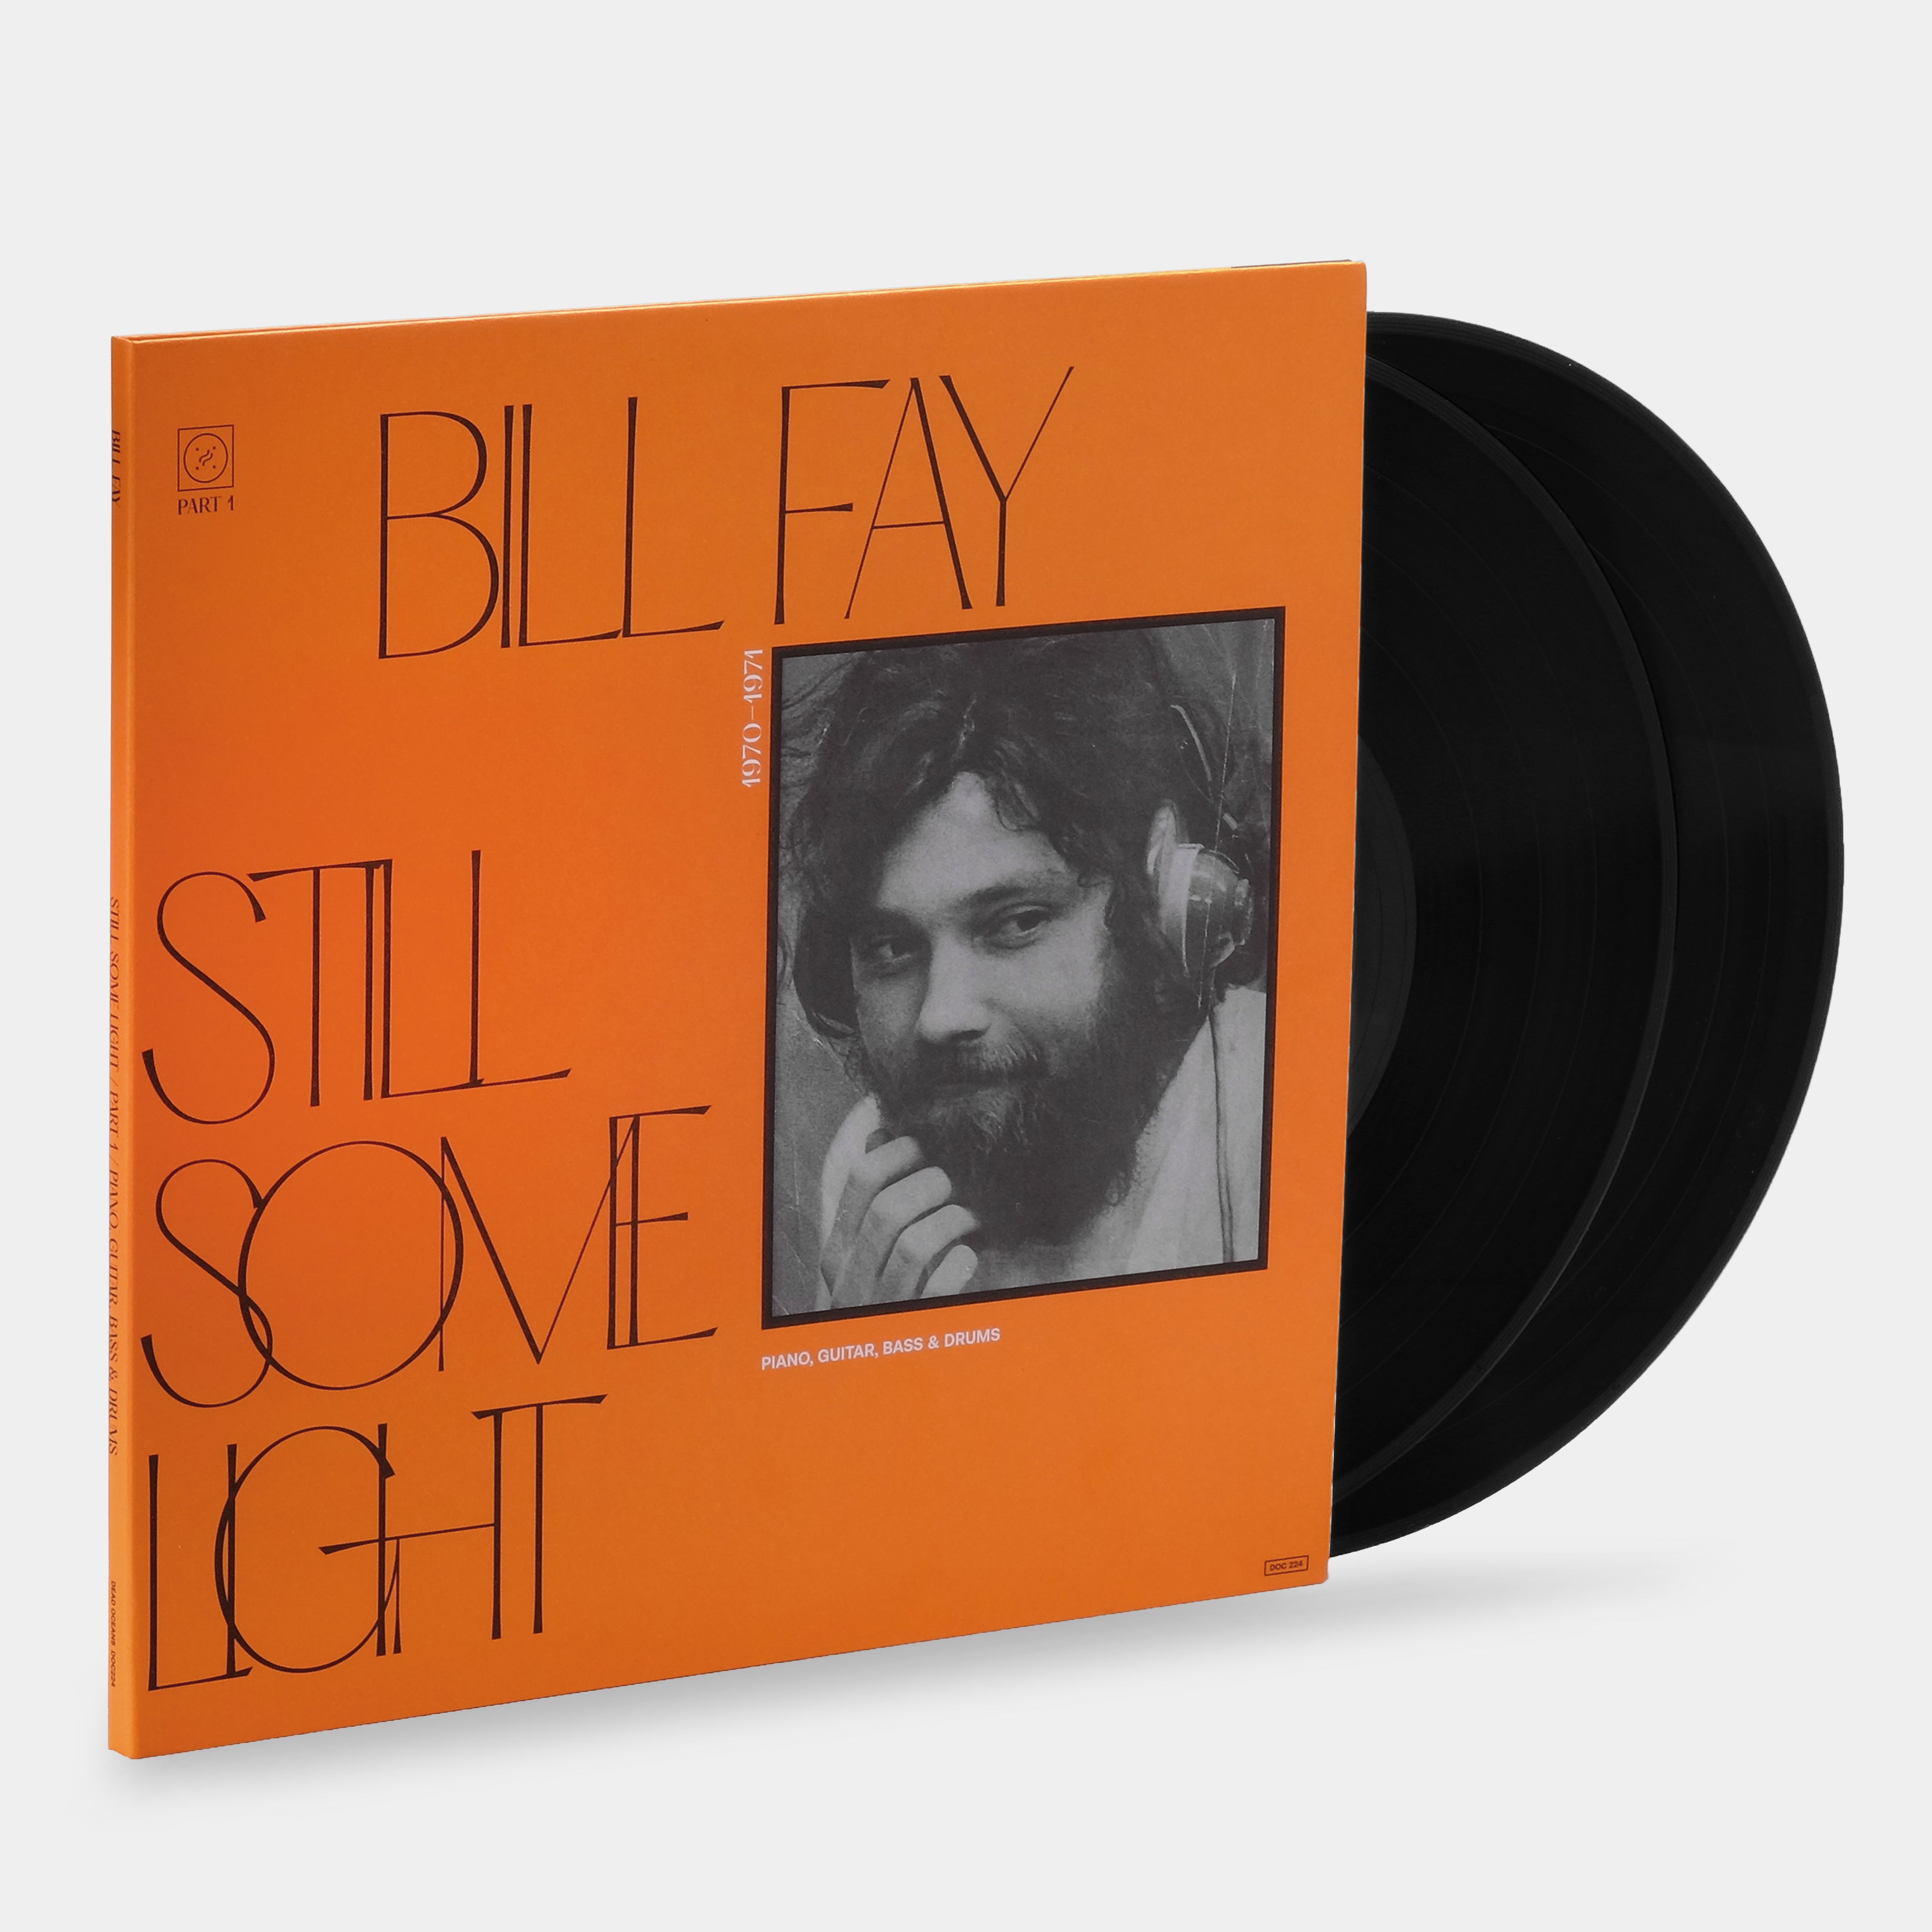 Bill Fay - Still Some Light Part 1 2xLP Vinyl Record